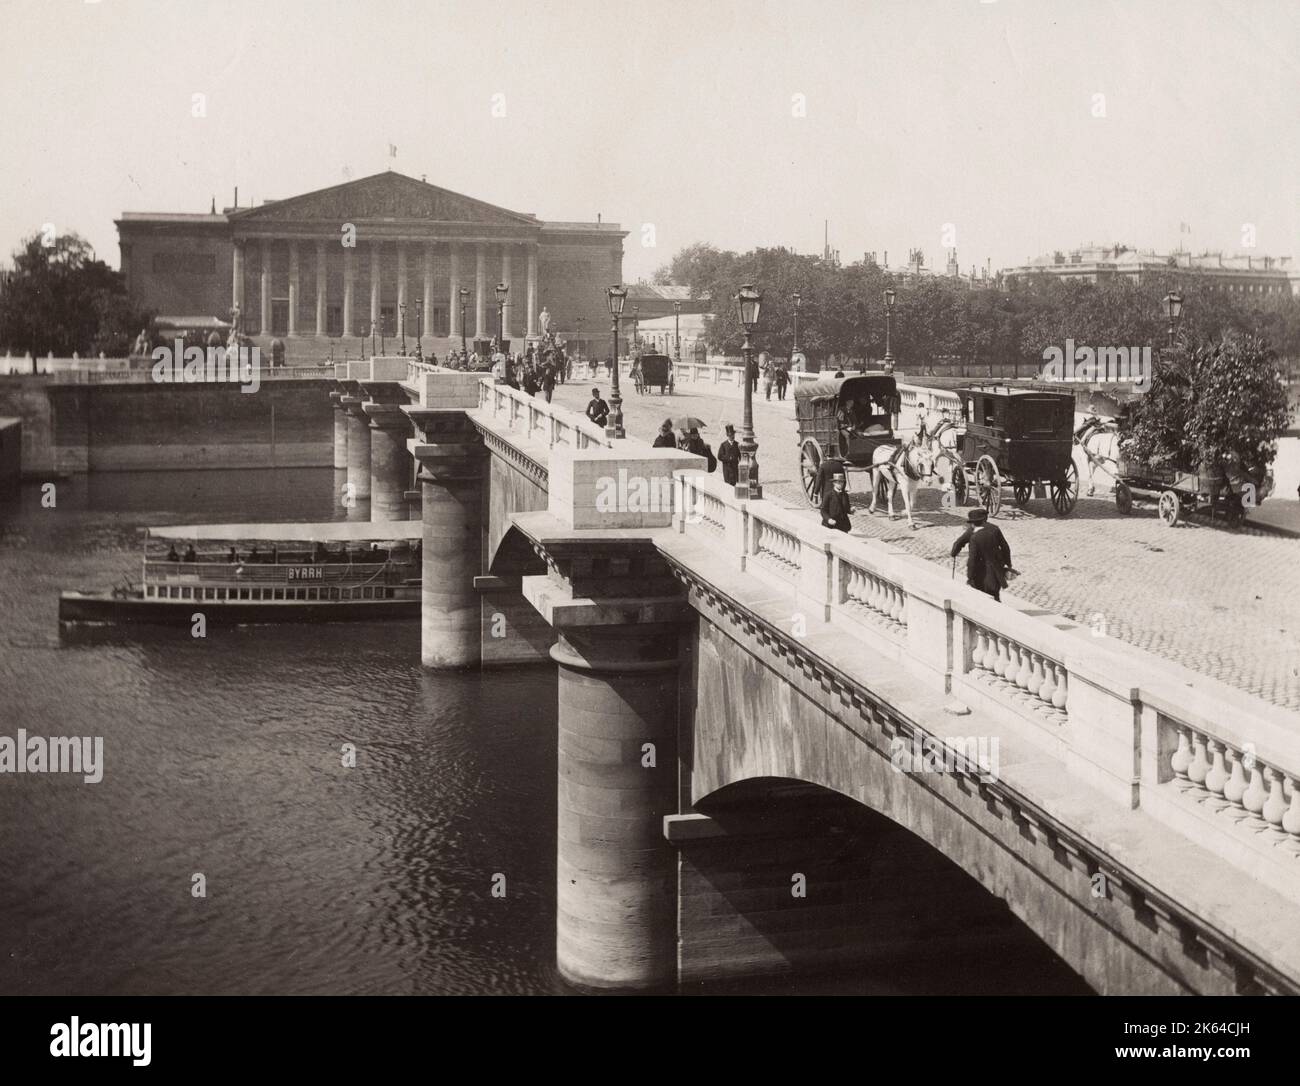 Fotografia d'epoca del XIX secolo - Pont de la Concorde e Camera dei deputati, Parigi Francia. Il Pont de la Concorde è un ponte ad arco sulla Senna di Parigi che collega il Quai des Tuileries a Place de la Concorde e il Quai d'Orsay. Foto Stock